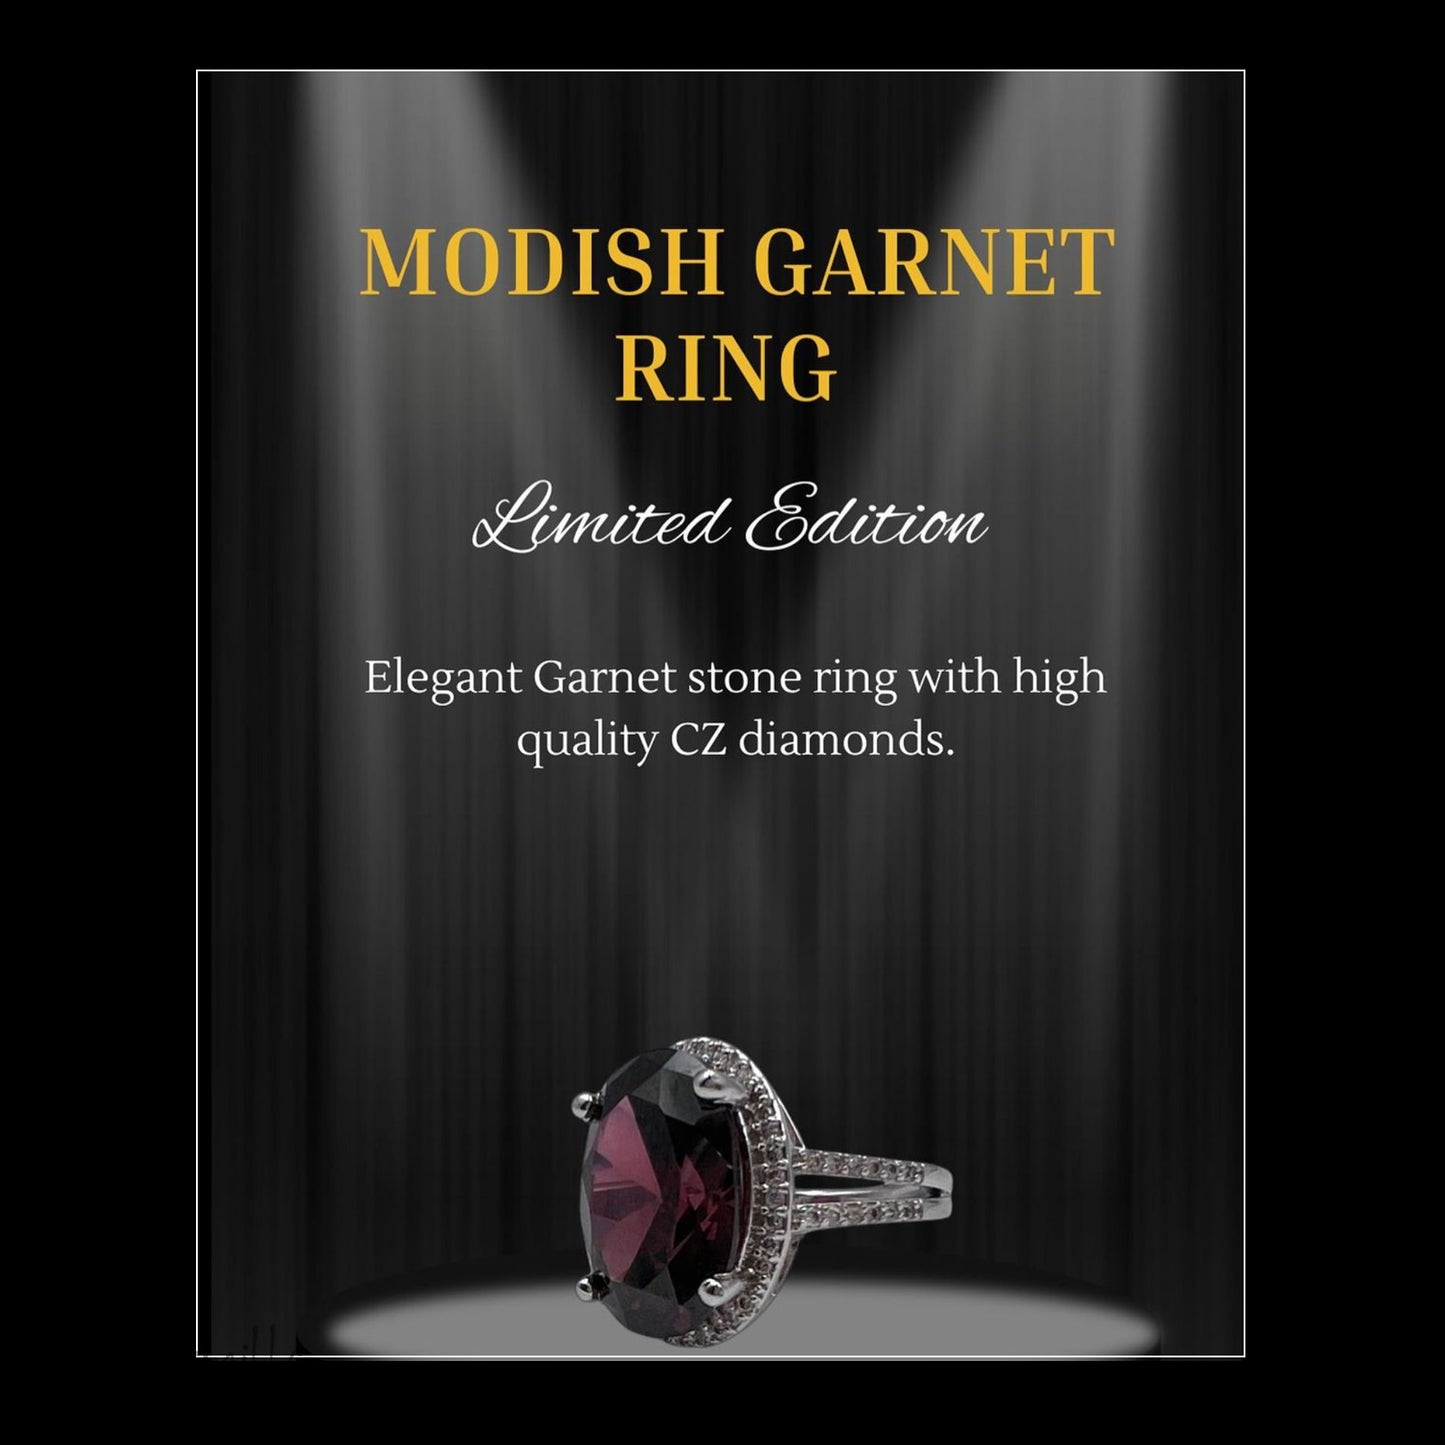 Modish Garnet Ring